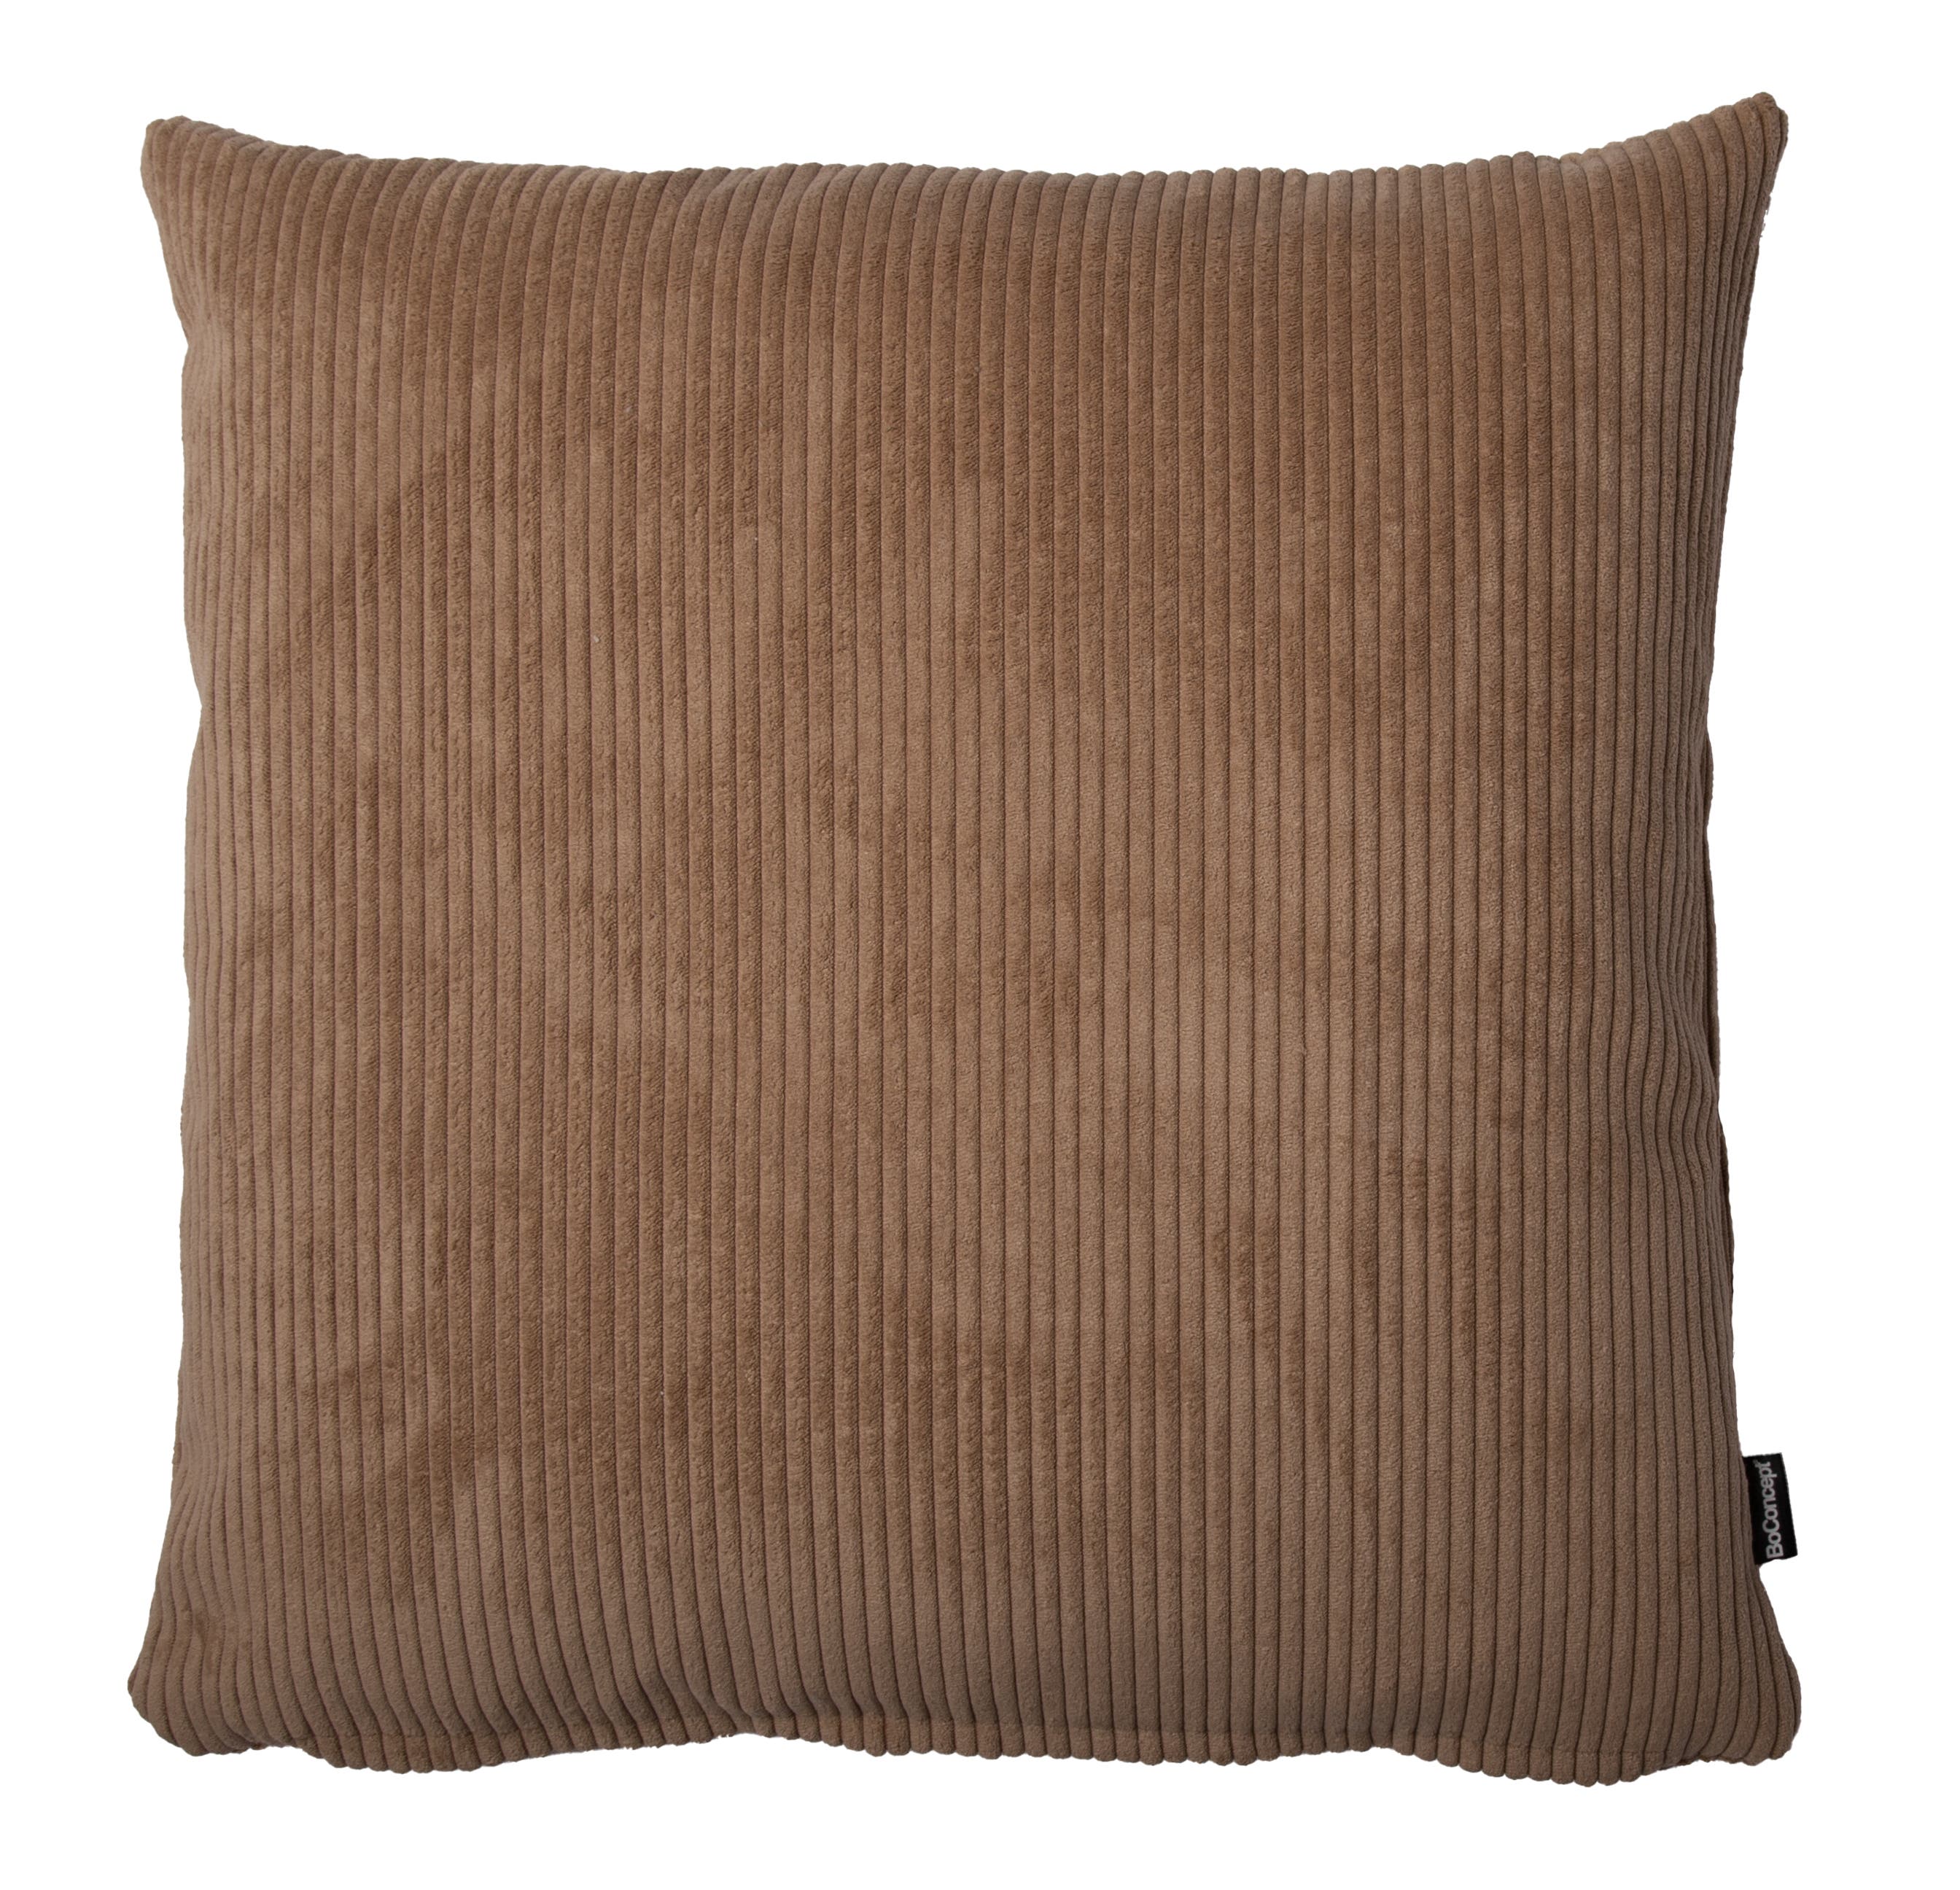 Cord cushion